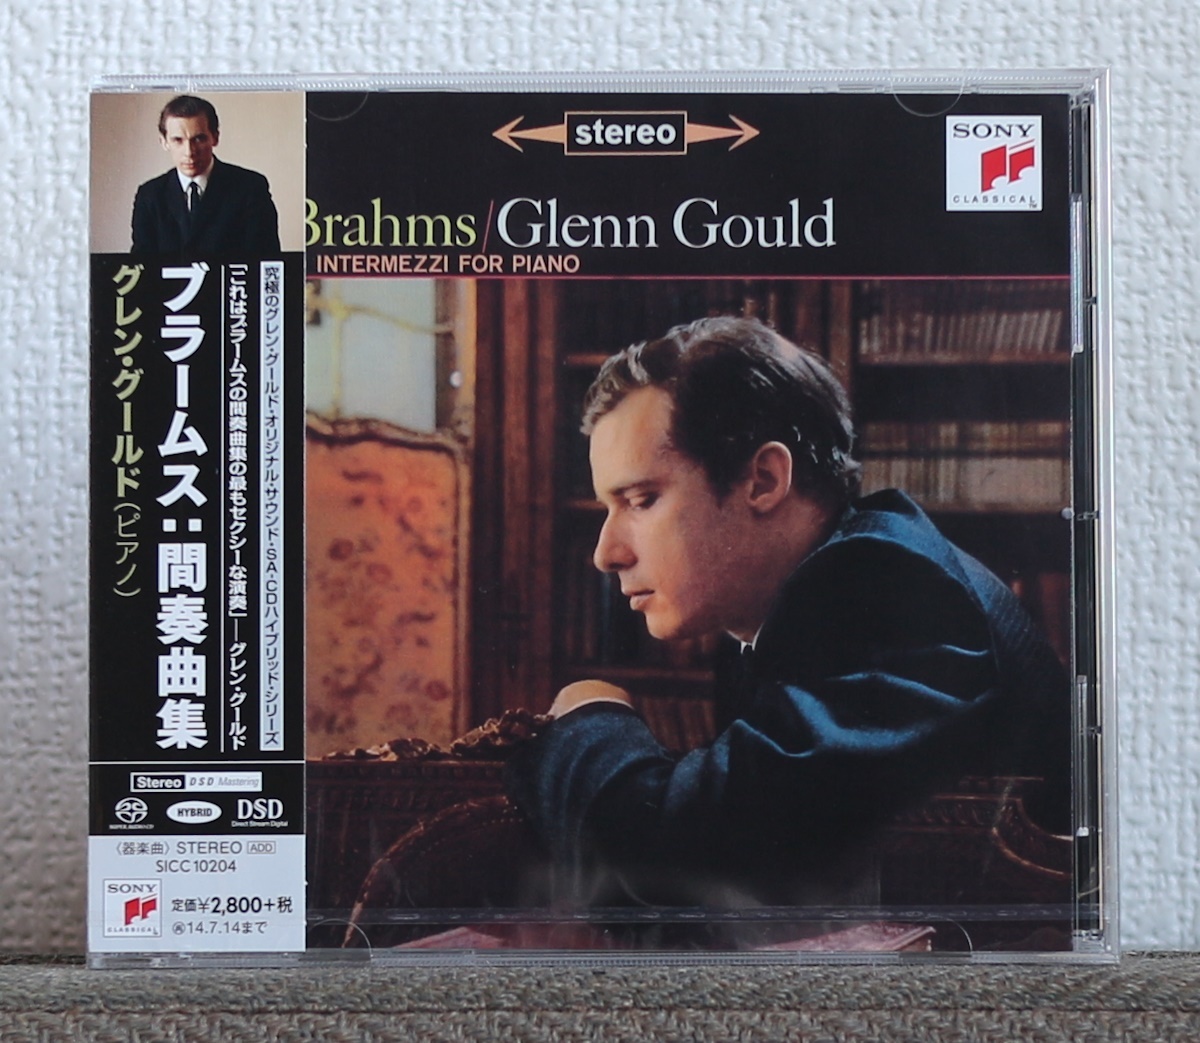 高音質CD/SACD/グレン・グールド/ブラームス/Glenn Gould/Brahms/10 Intermezzi for Piano/ピアノ_画像1